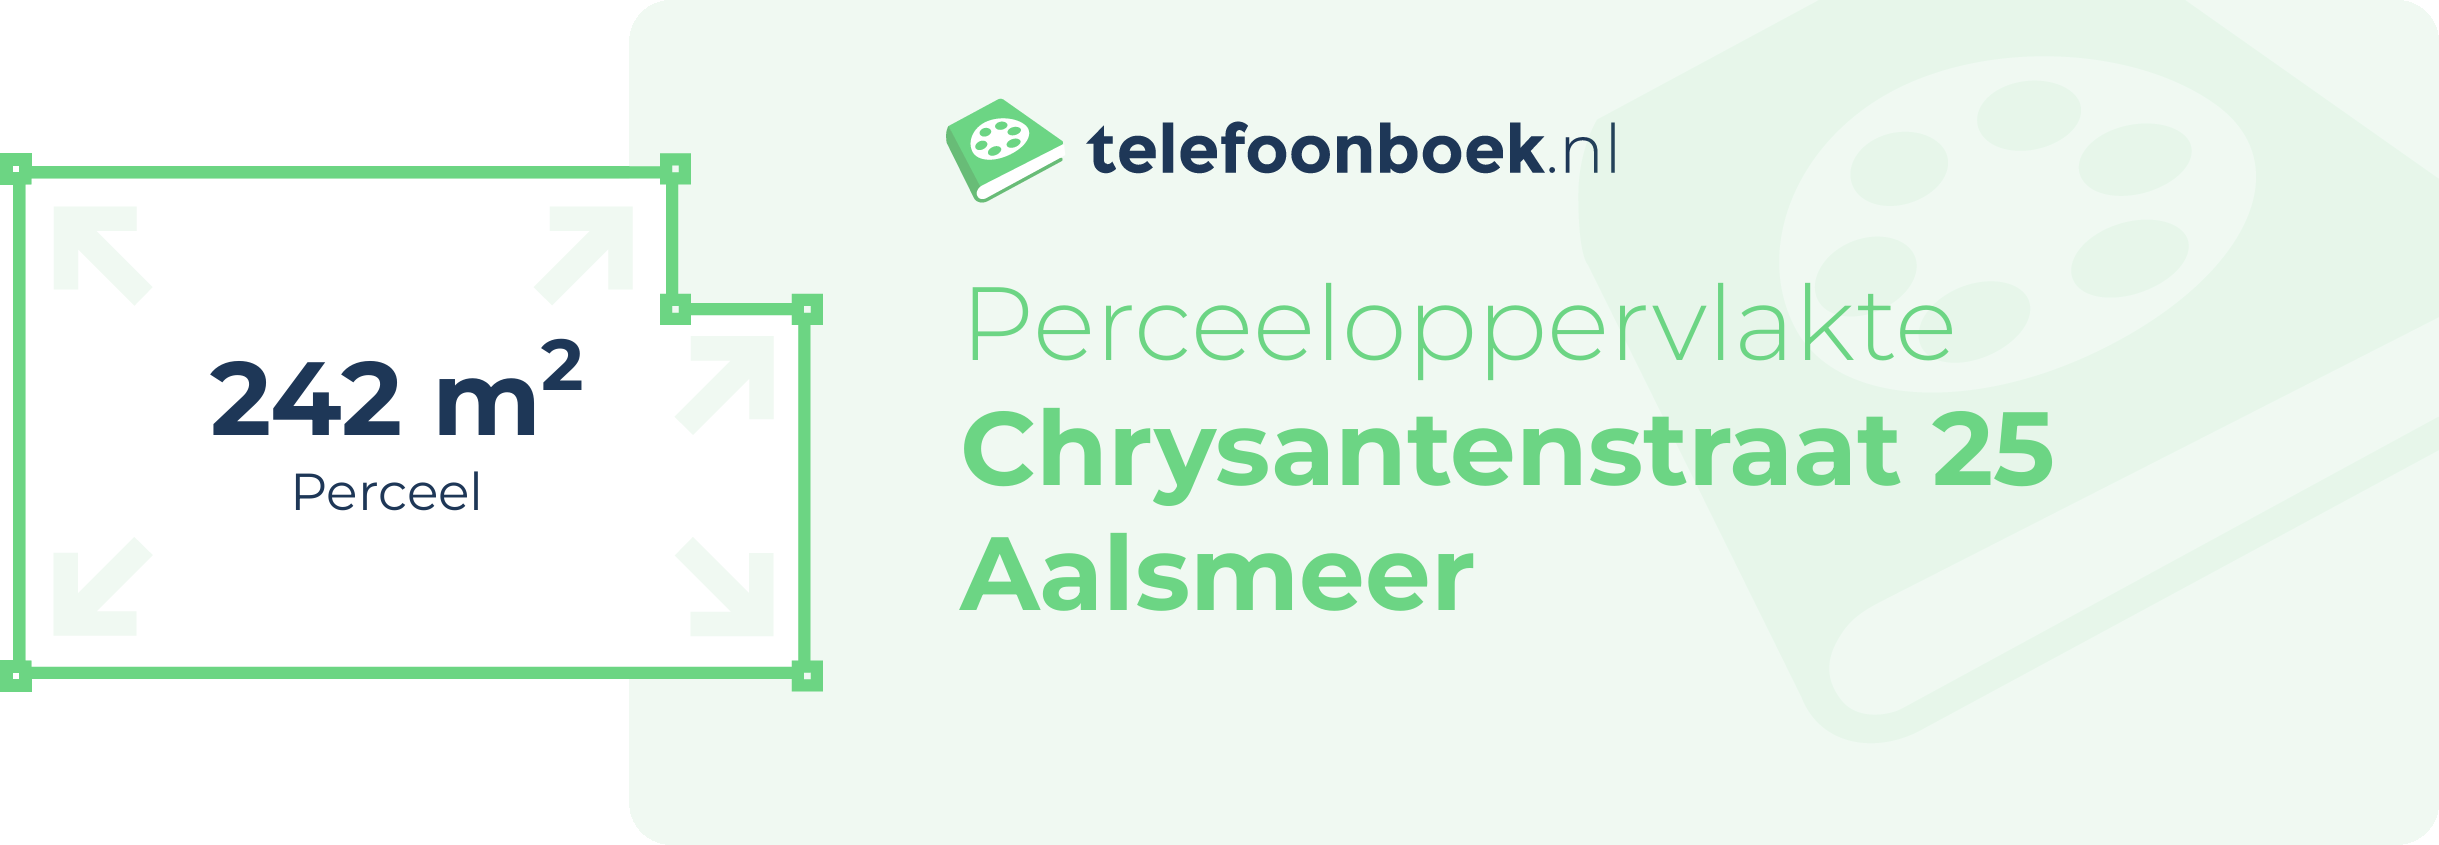 Perceeloppervlakte Chrysantenstraat 25 Aalsmeer